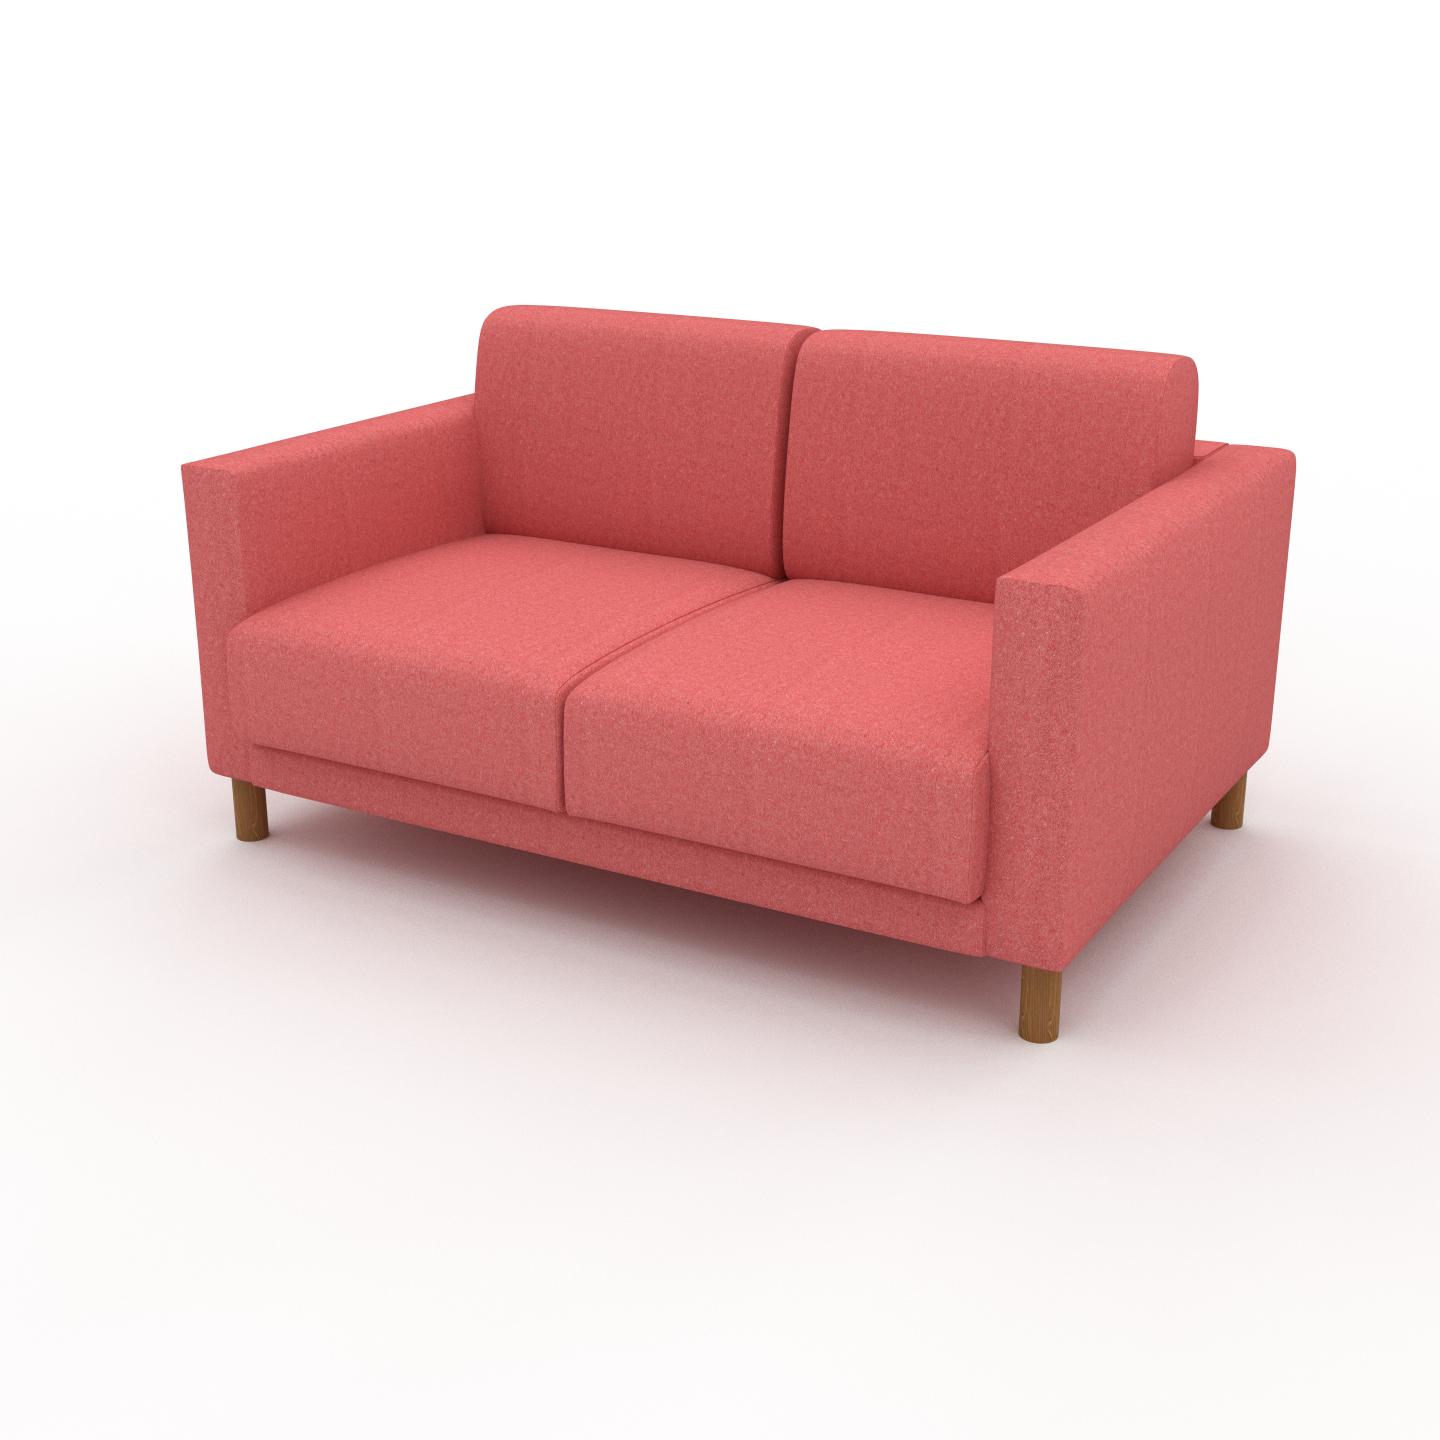 MYCS Sofa 2-Sitzer Korallenrot Wolle - Elegantes, gemütliches 2-Sitzer Sofa: Hochwertige Qualität, einzigartiges Design - 144 x 75 x 98 cm, konfigurierbar